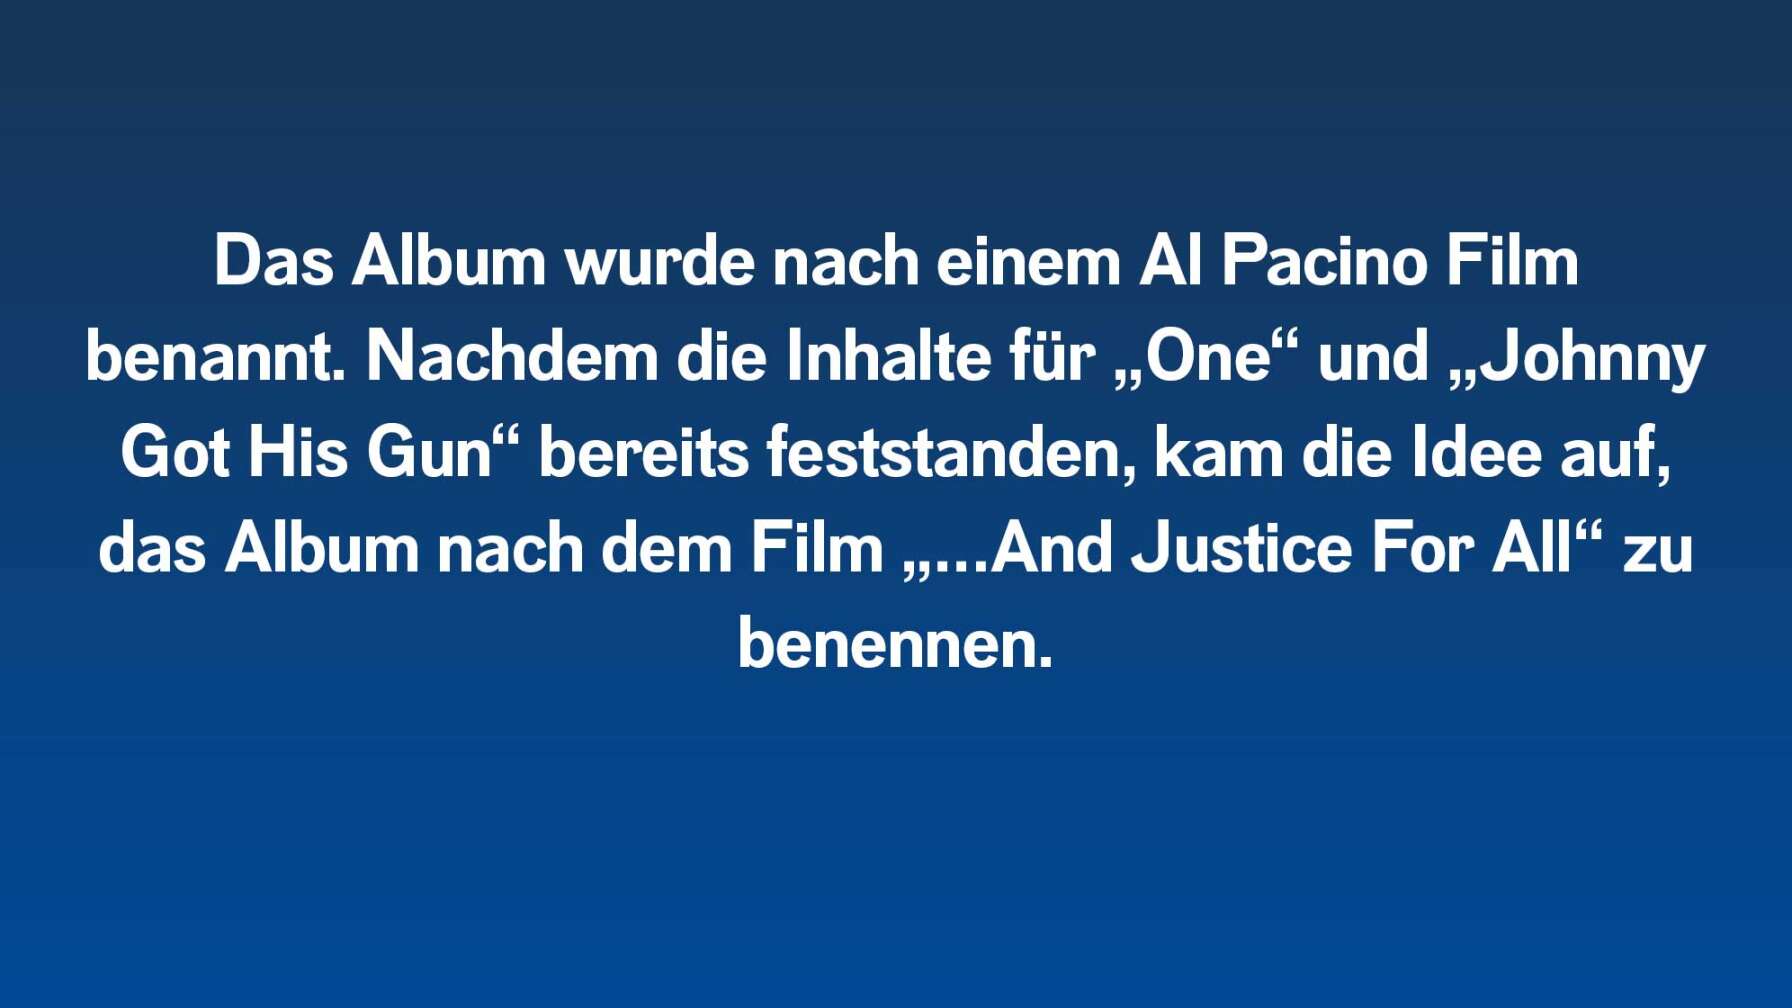 Das Album wurde nach einem Al Pacino Film benannt. Nachdem die Inhalte für „One“ und „Johnny Got His Gun“ bereits feststanden, kam die Idee auf, das Album nach dem Film „…And Justice For All“ zu benennen.